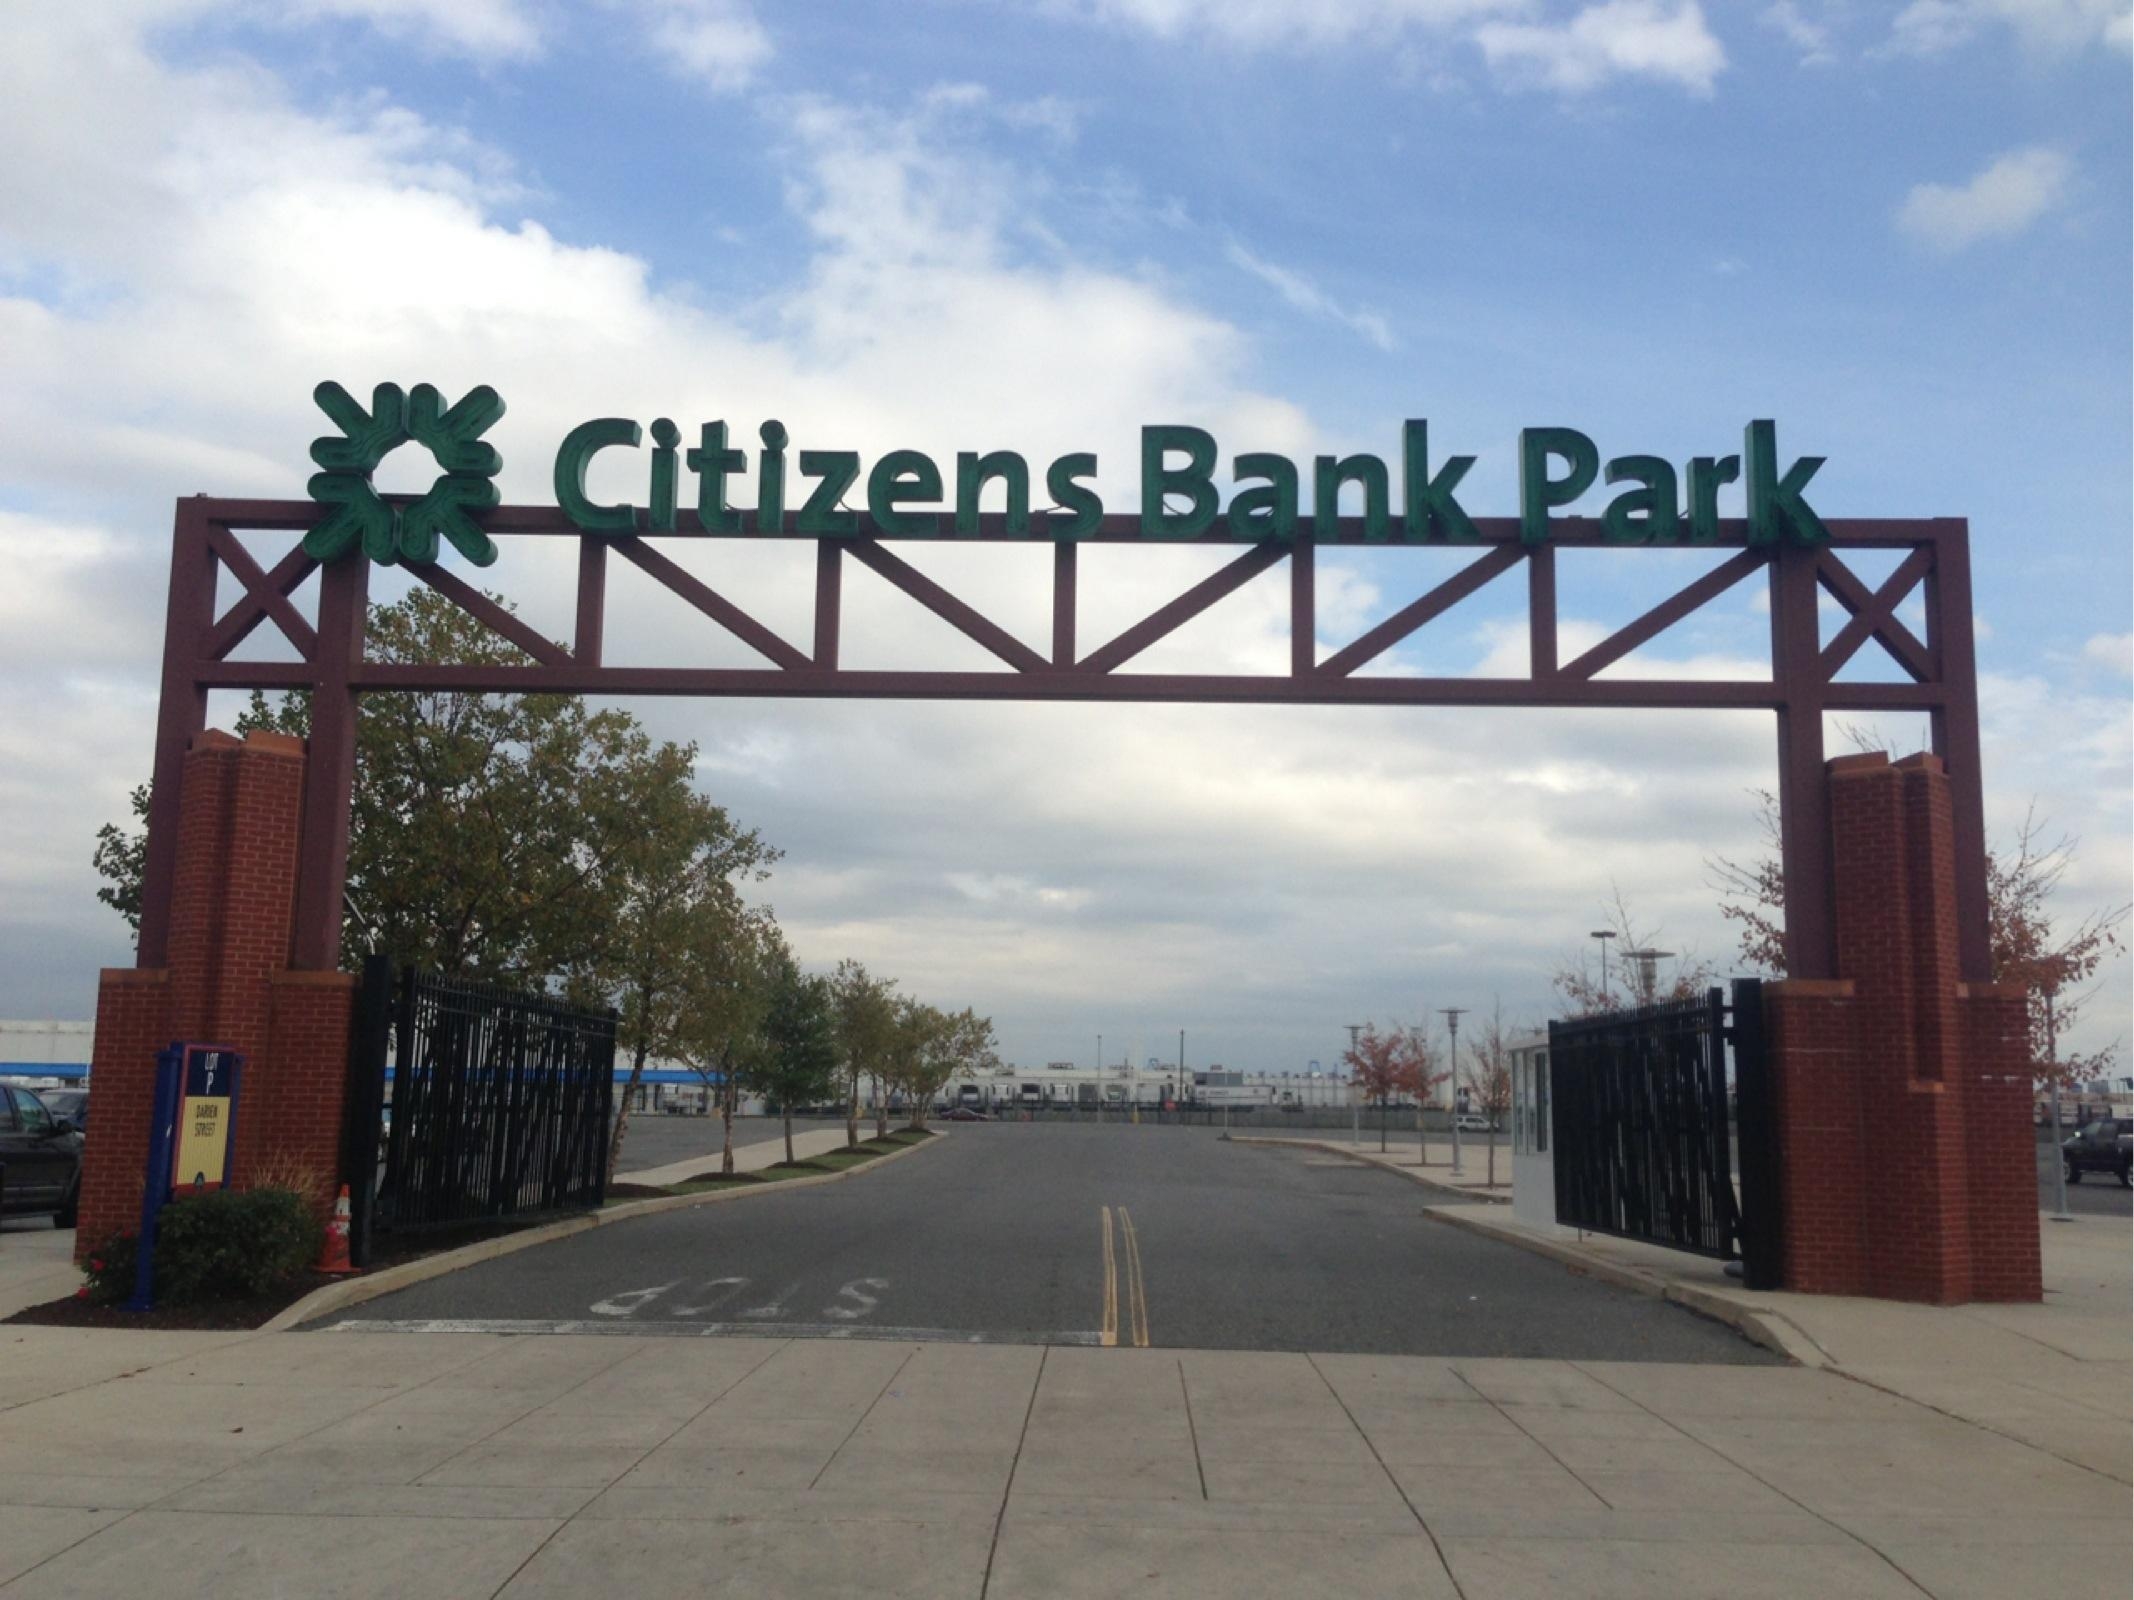 Citizens Bank Park - Lot P - Parking in Philadelphia | ParkMe